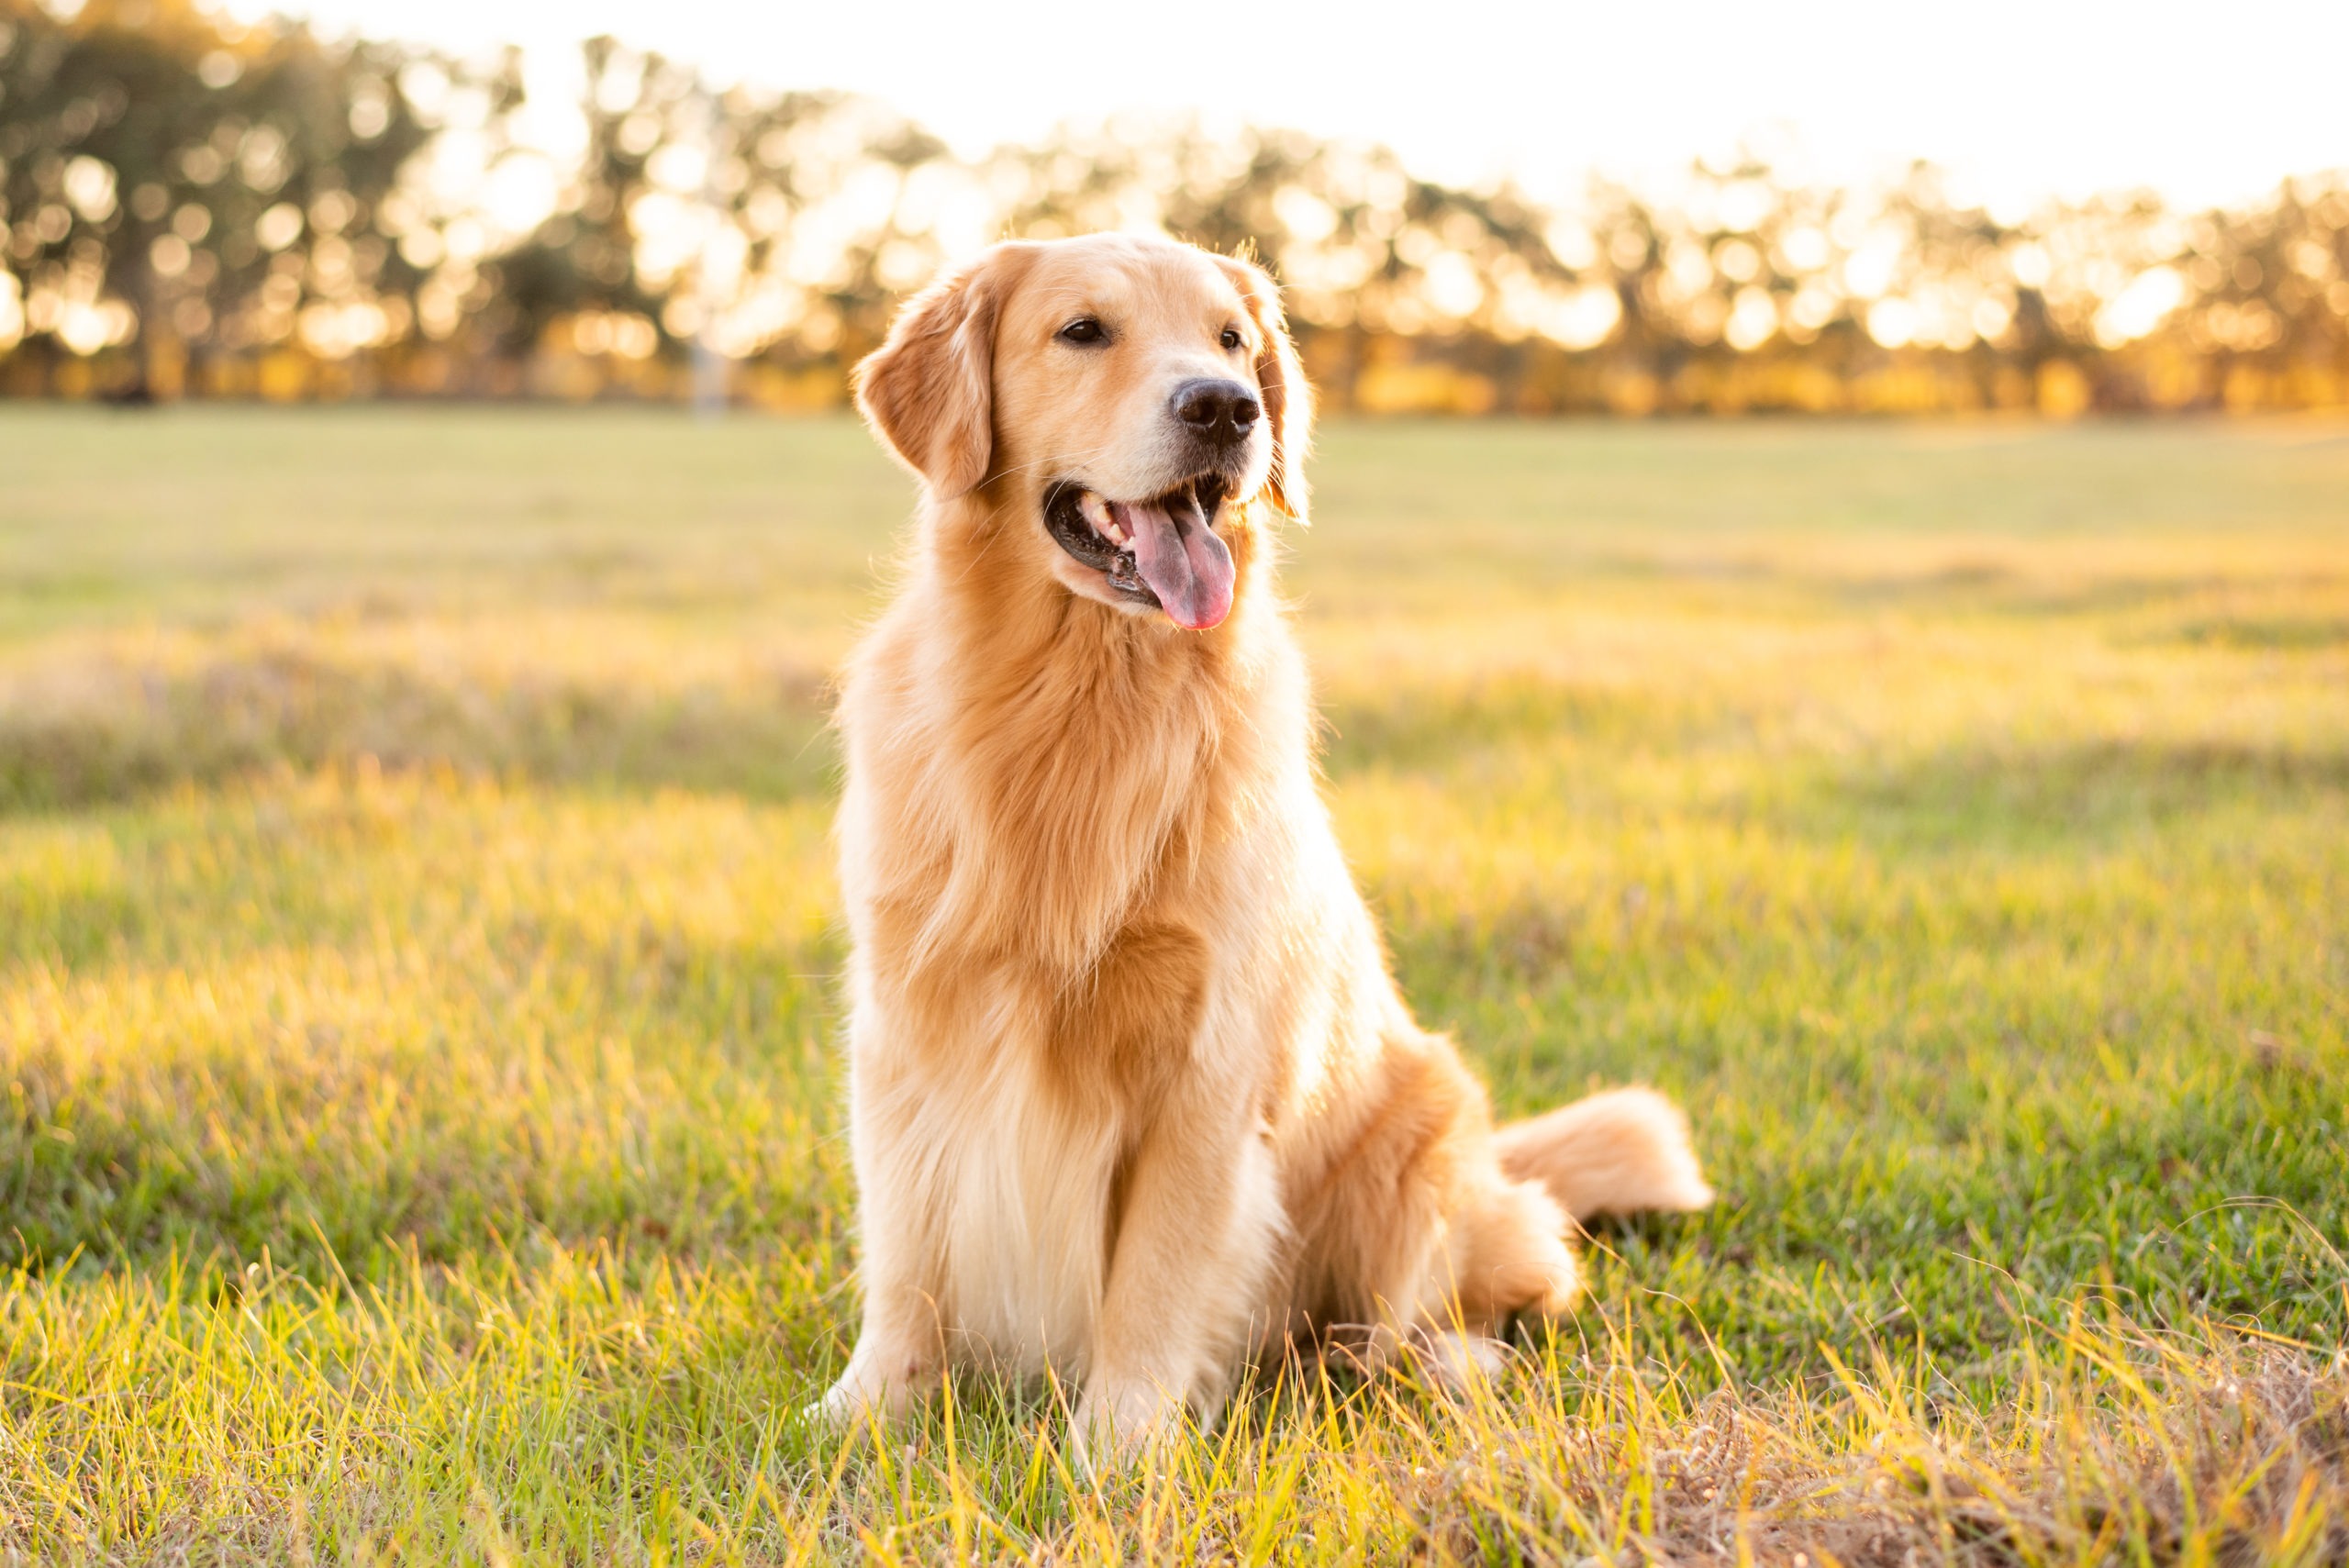 Golden Retriever dog enjoying outdoors at a large grass field at